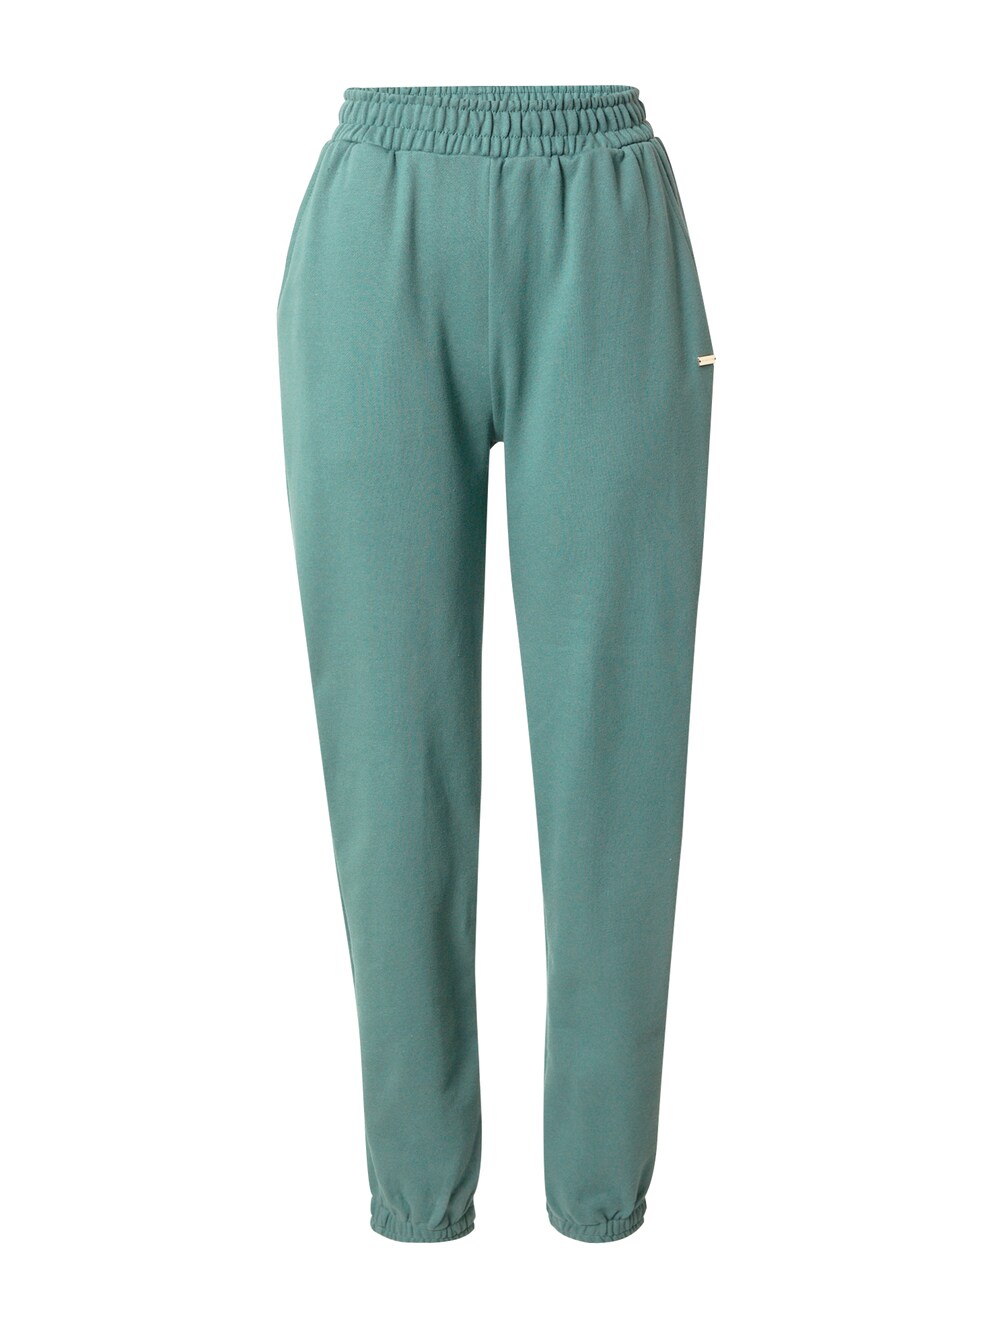 Зауженные тренировочные брюки Athlecia Cinzia, зеленый